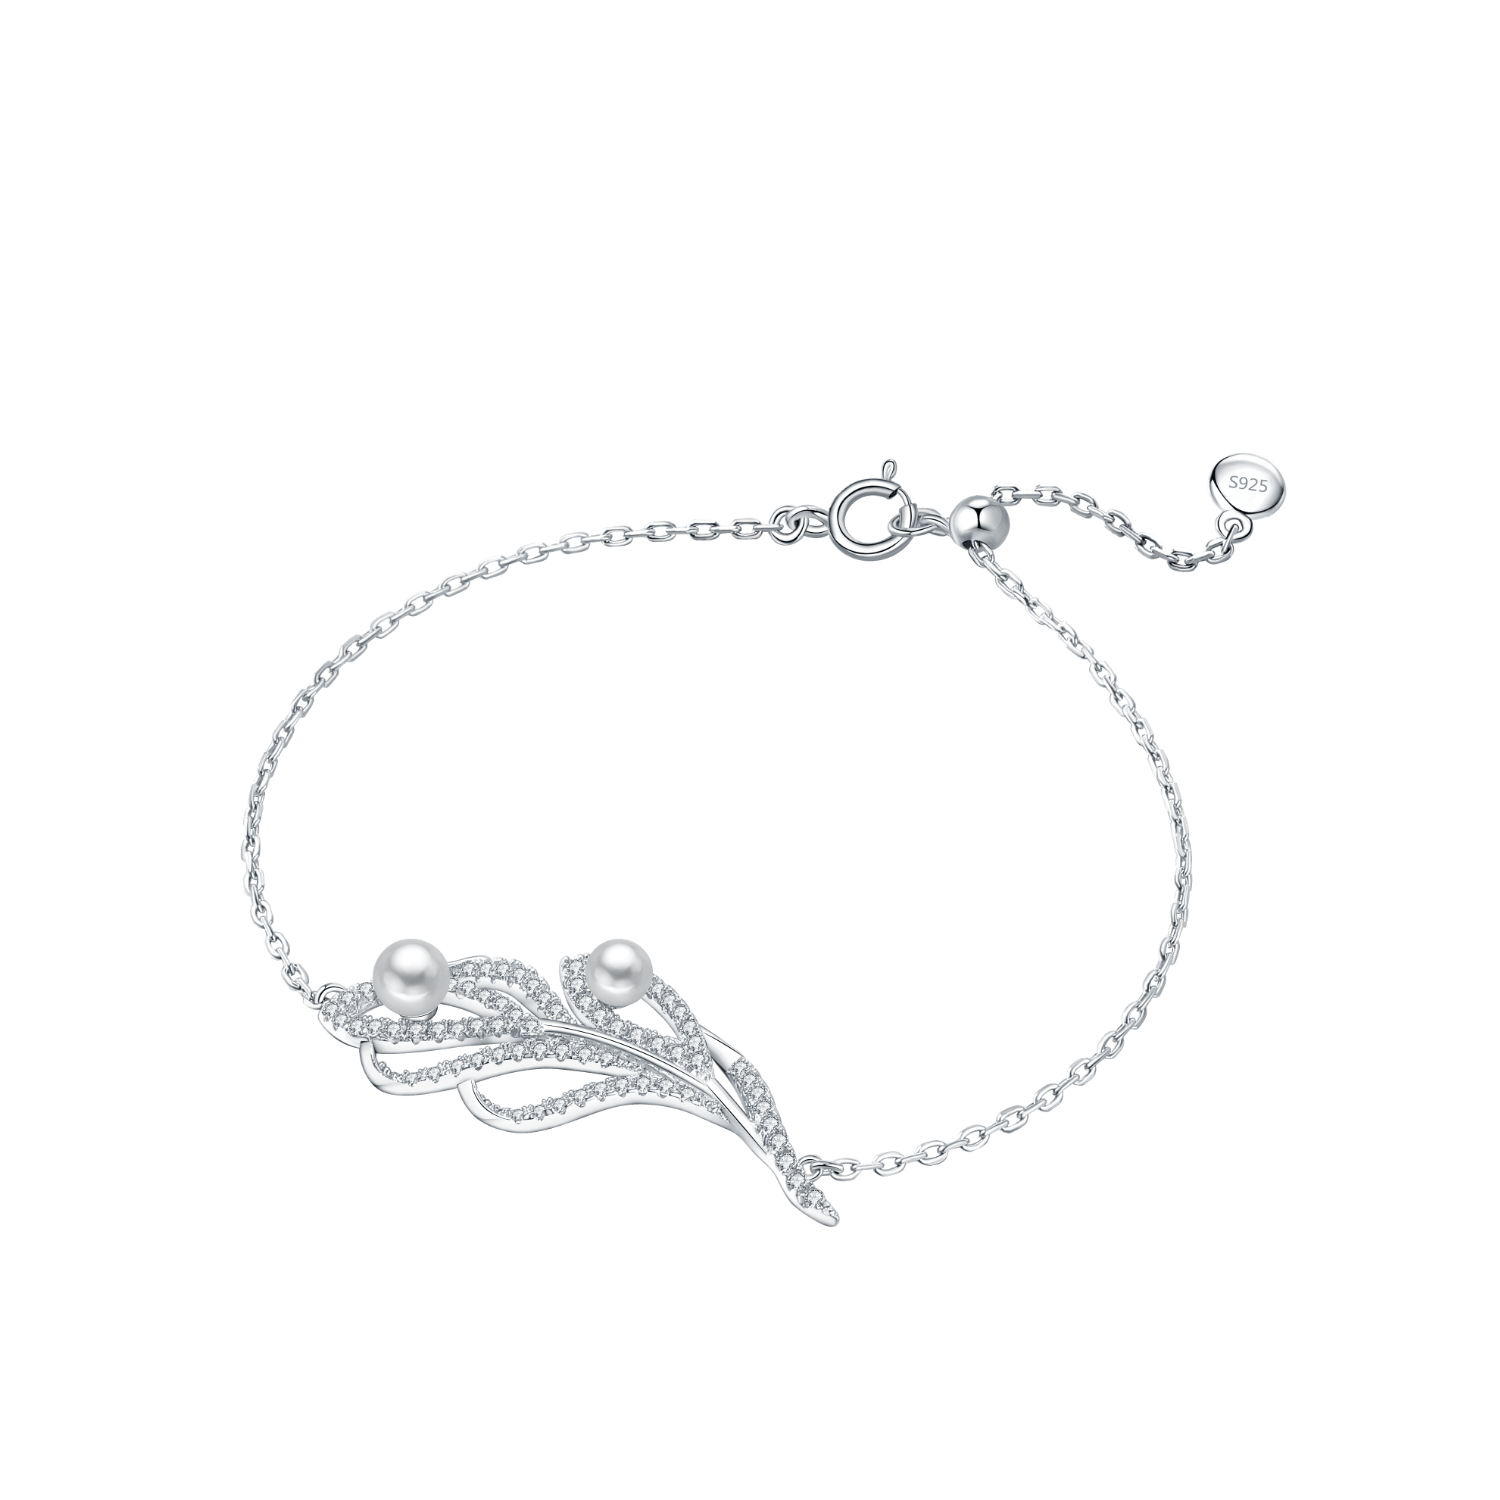 Silver & Connemara Marble Trinity Knot Bracelet - CladdaghRings.com